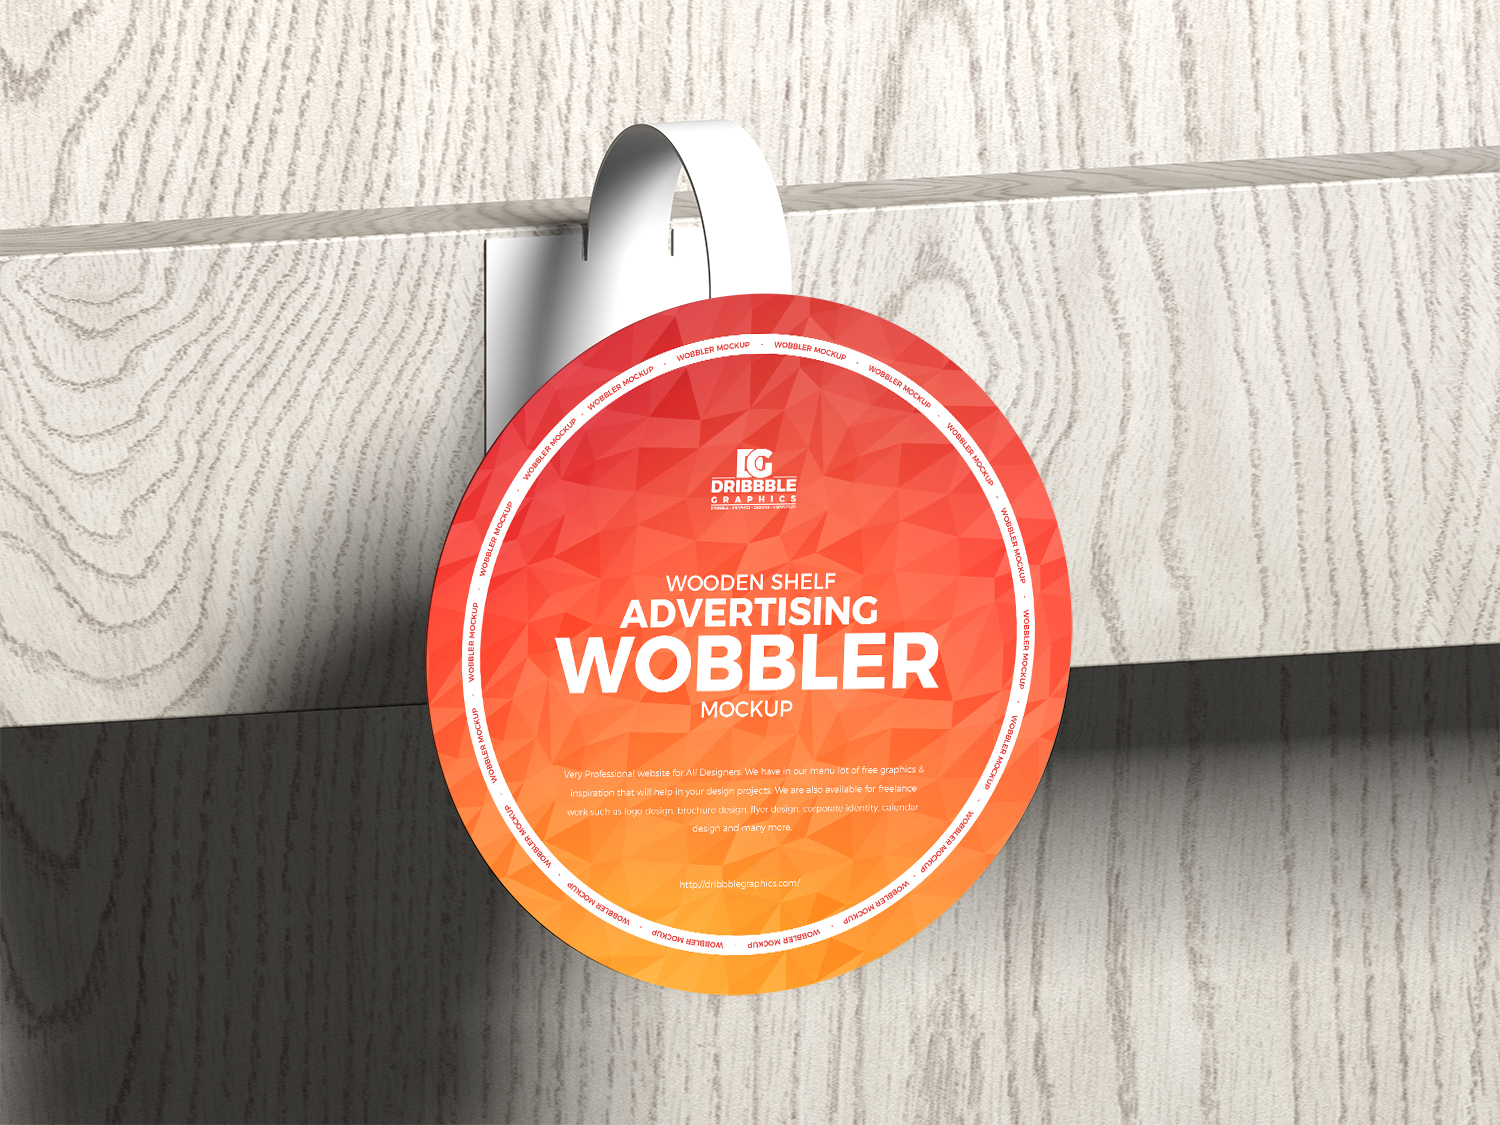 Publicidad de estante de madera maqueta wobbler